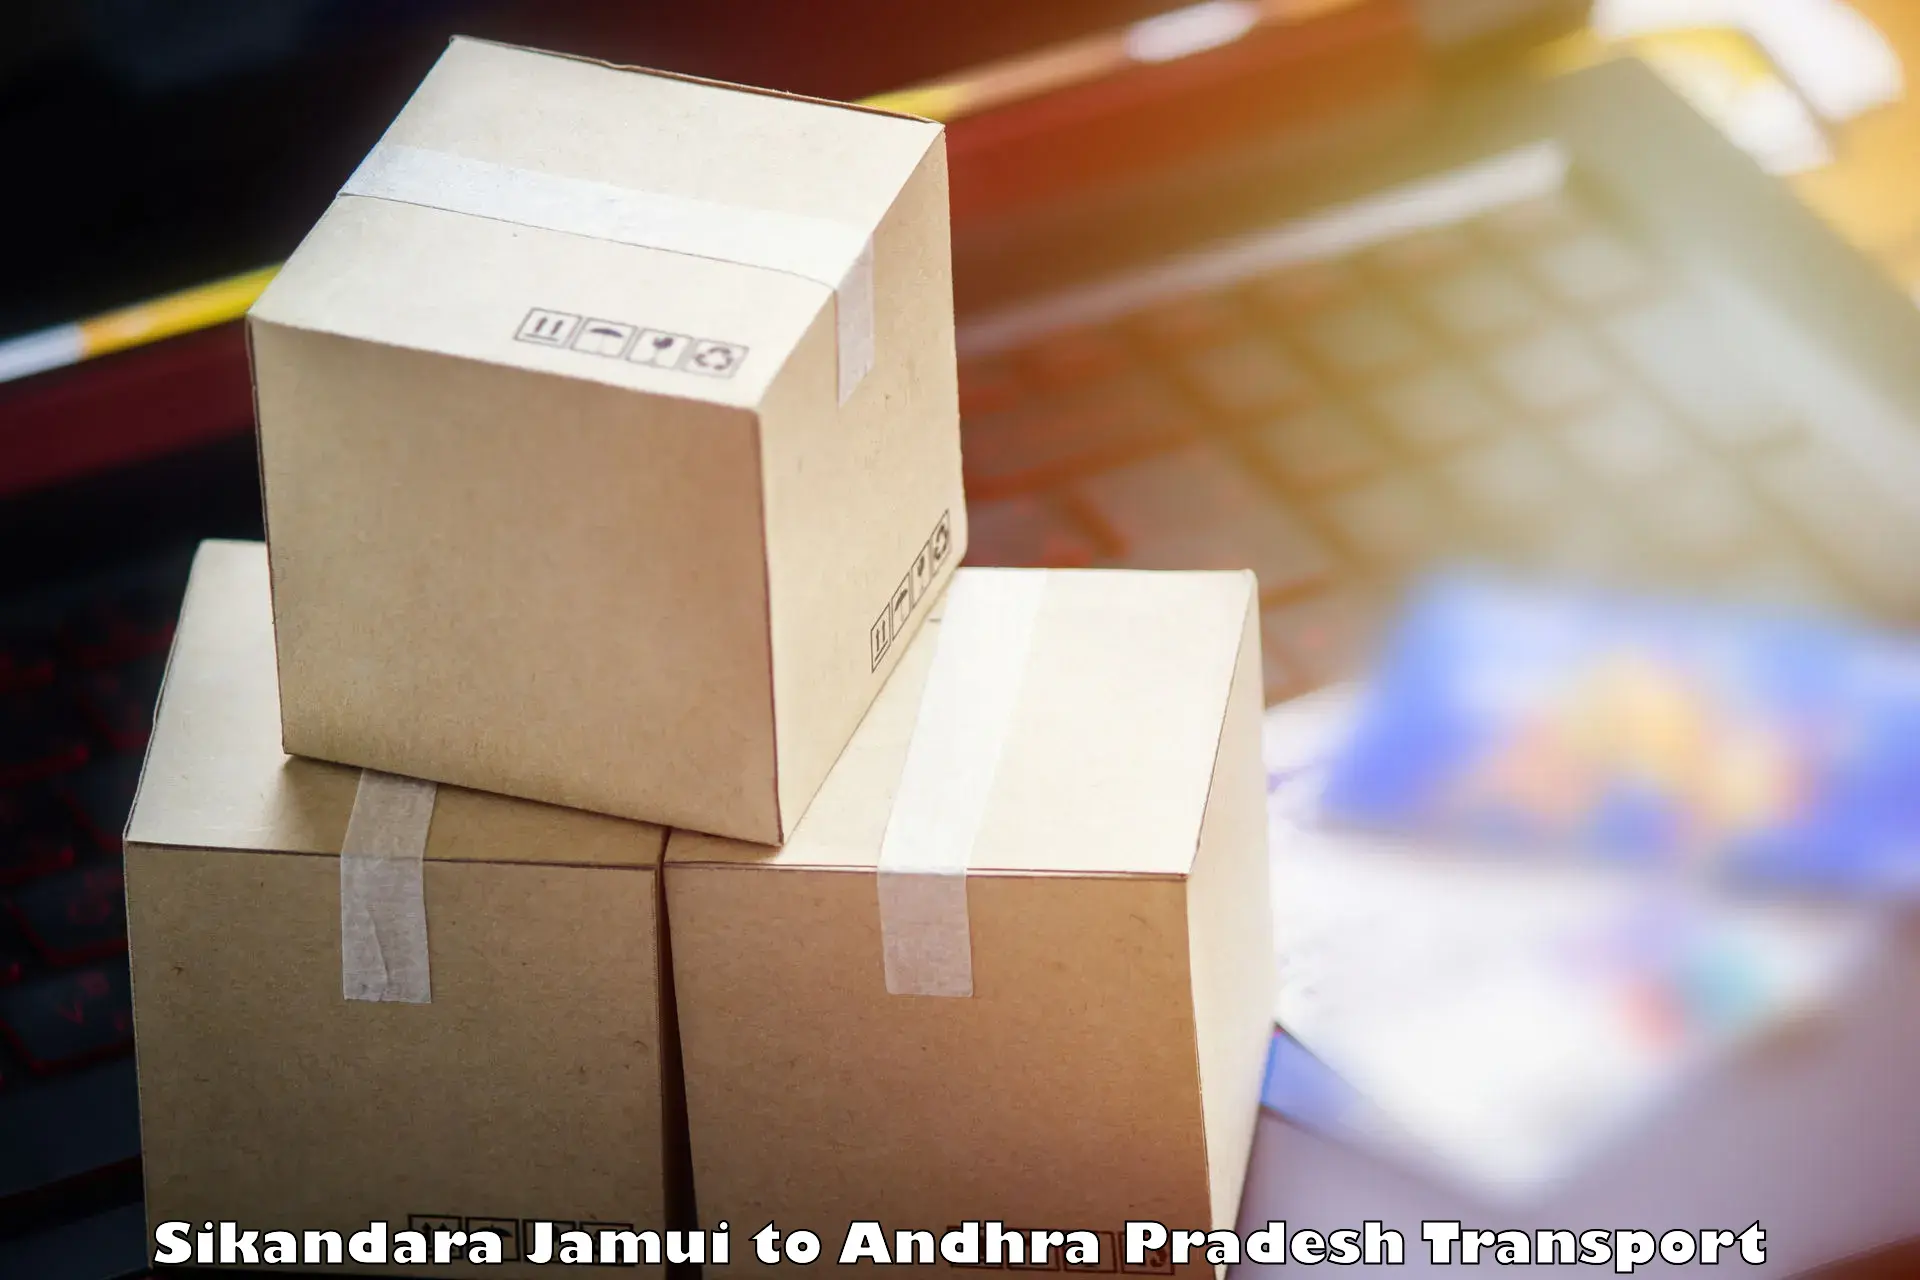 Daily transport service Sikandara Jamui to Andhra Pradesh